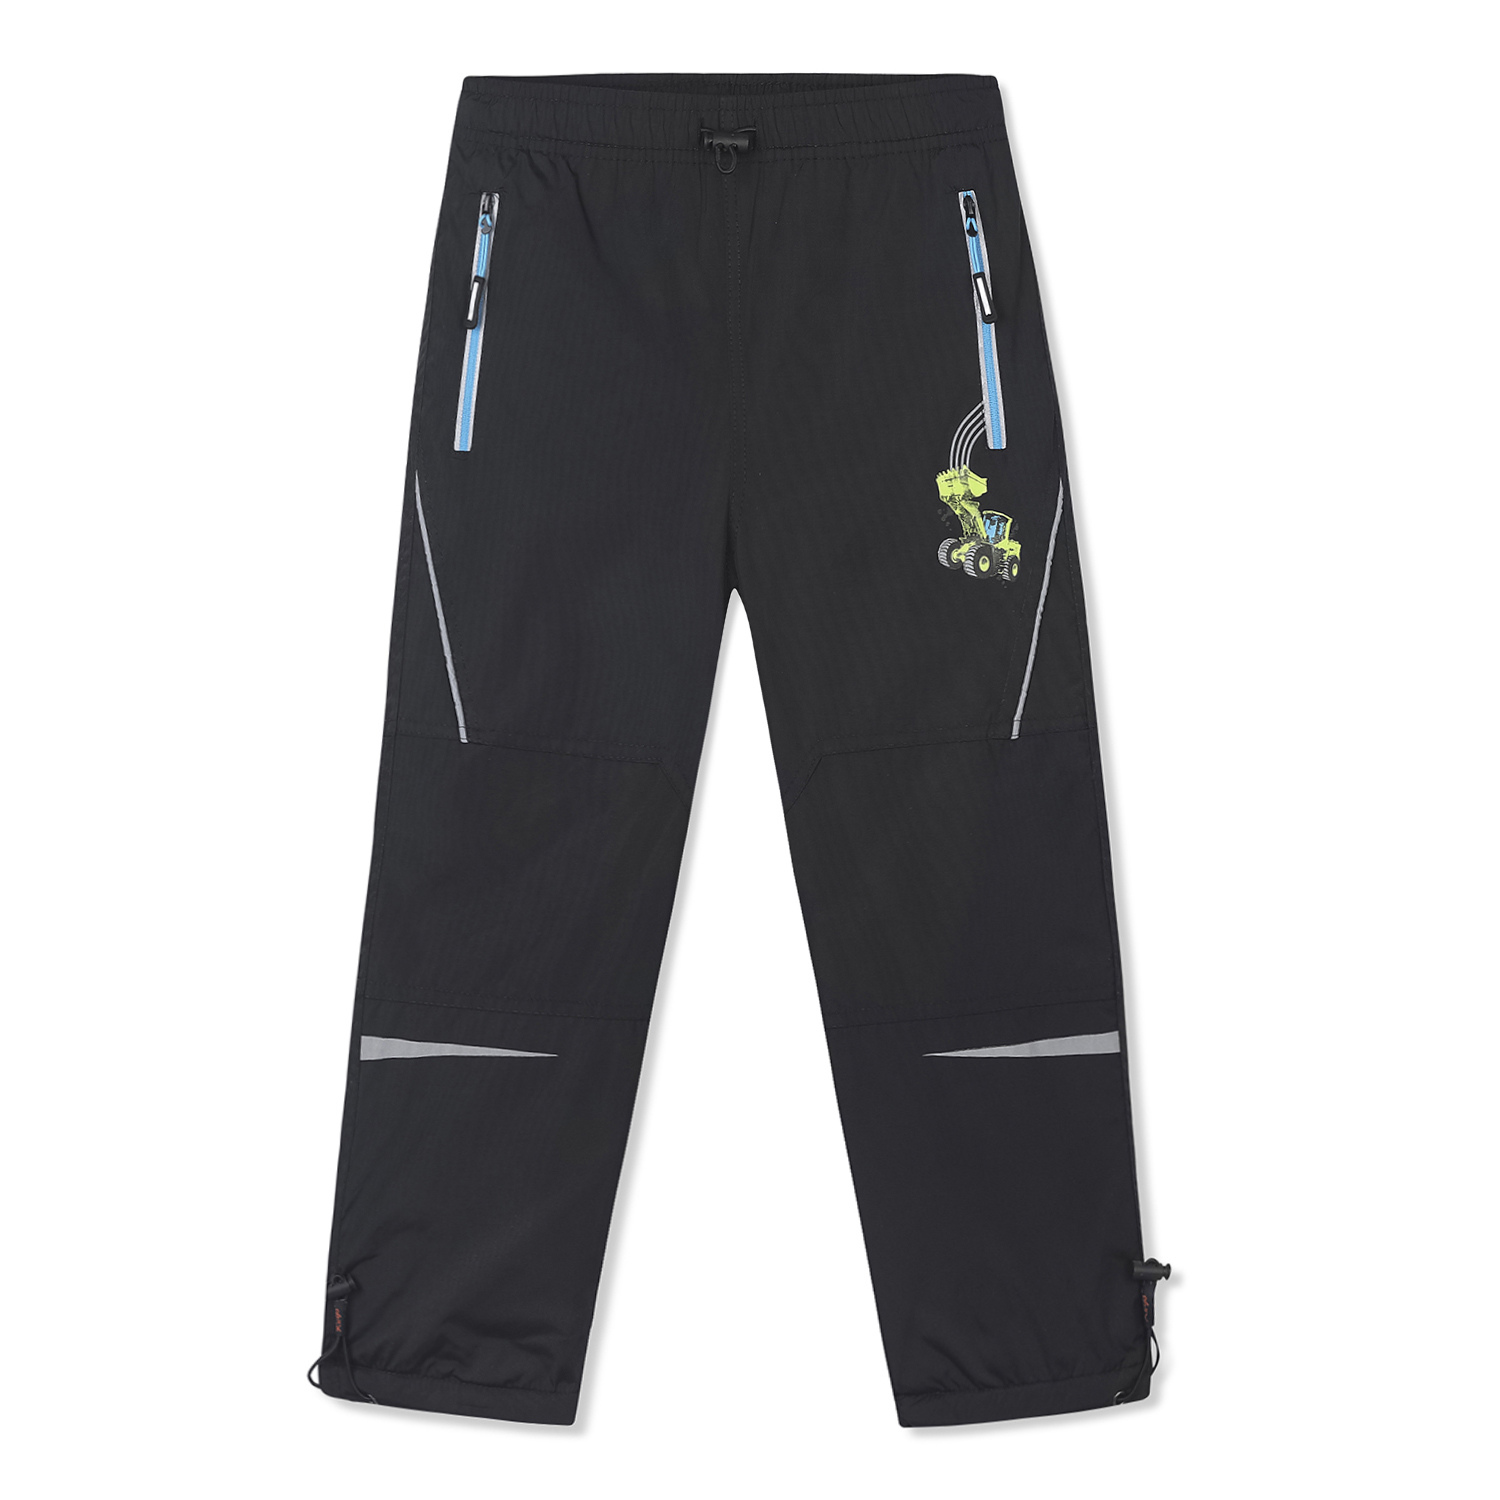 Chlapecké šusťákové kalhoty, zateplené - KUGO DK7092m, černá Barva: Černá, Velikost: 98